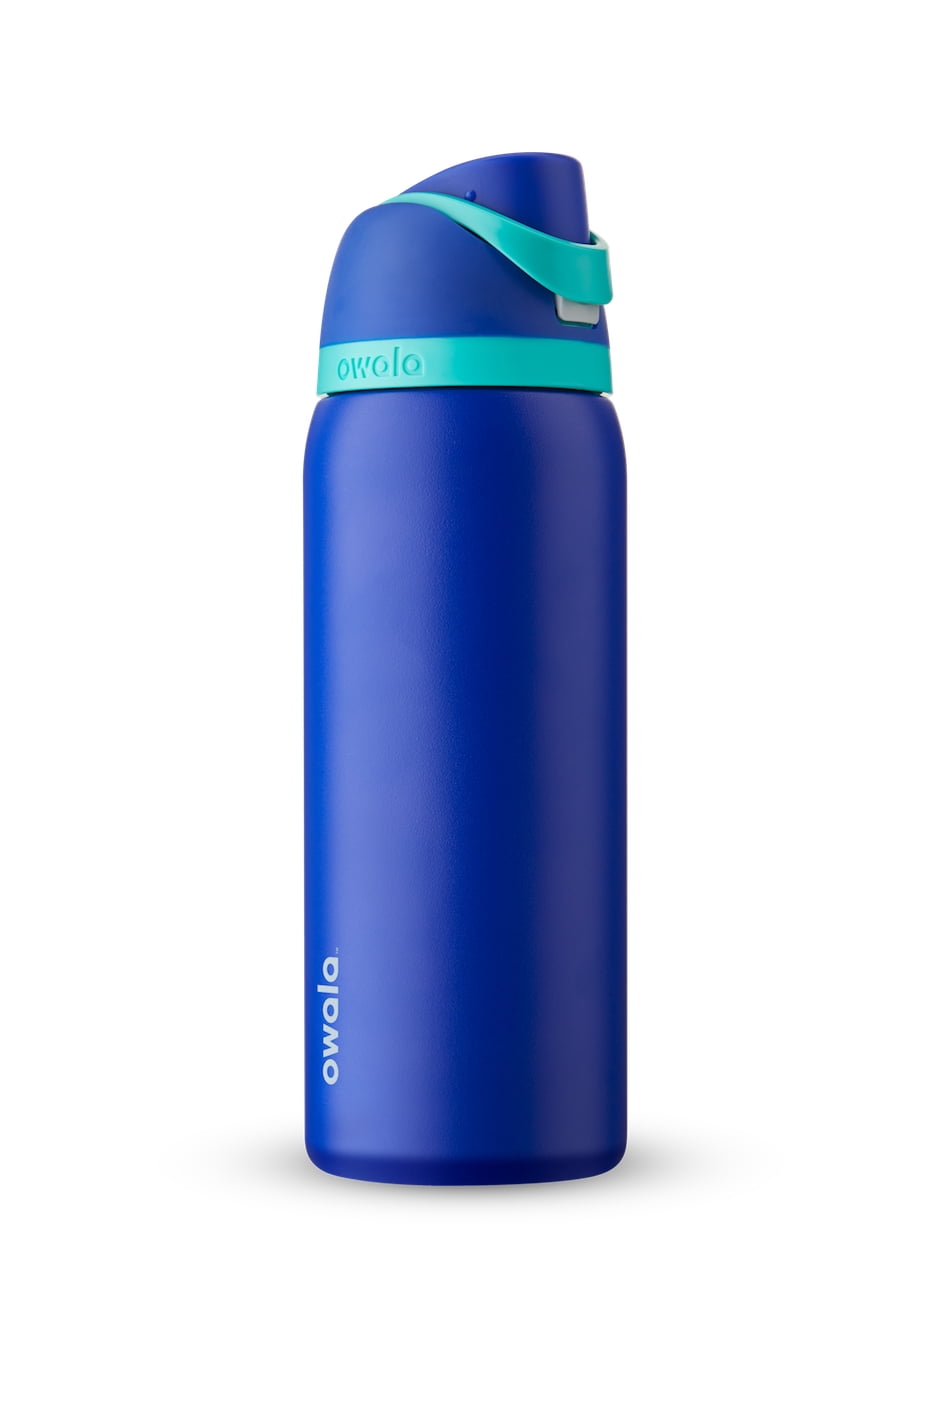 Owala FreeSip Stainless Steel Water Bottle, 32oz Blue - AliExpress